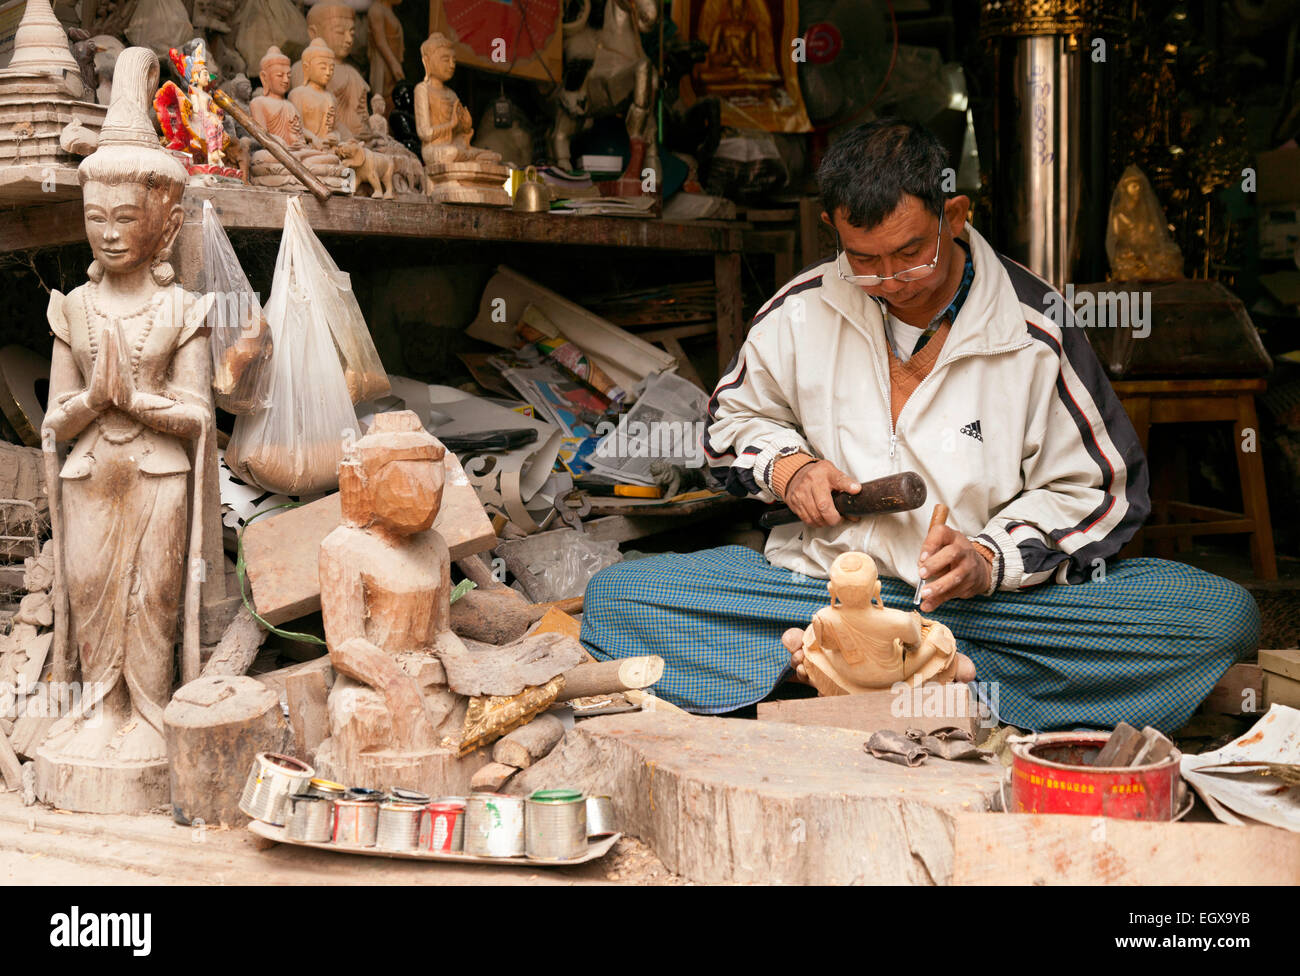 Un artigiano birmano nel suo negozio facendo una statua in legno del Buddha in vendita, Mandalay Myanmar ( Birmania ), Asia Foto Stock